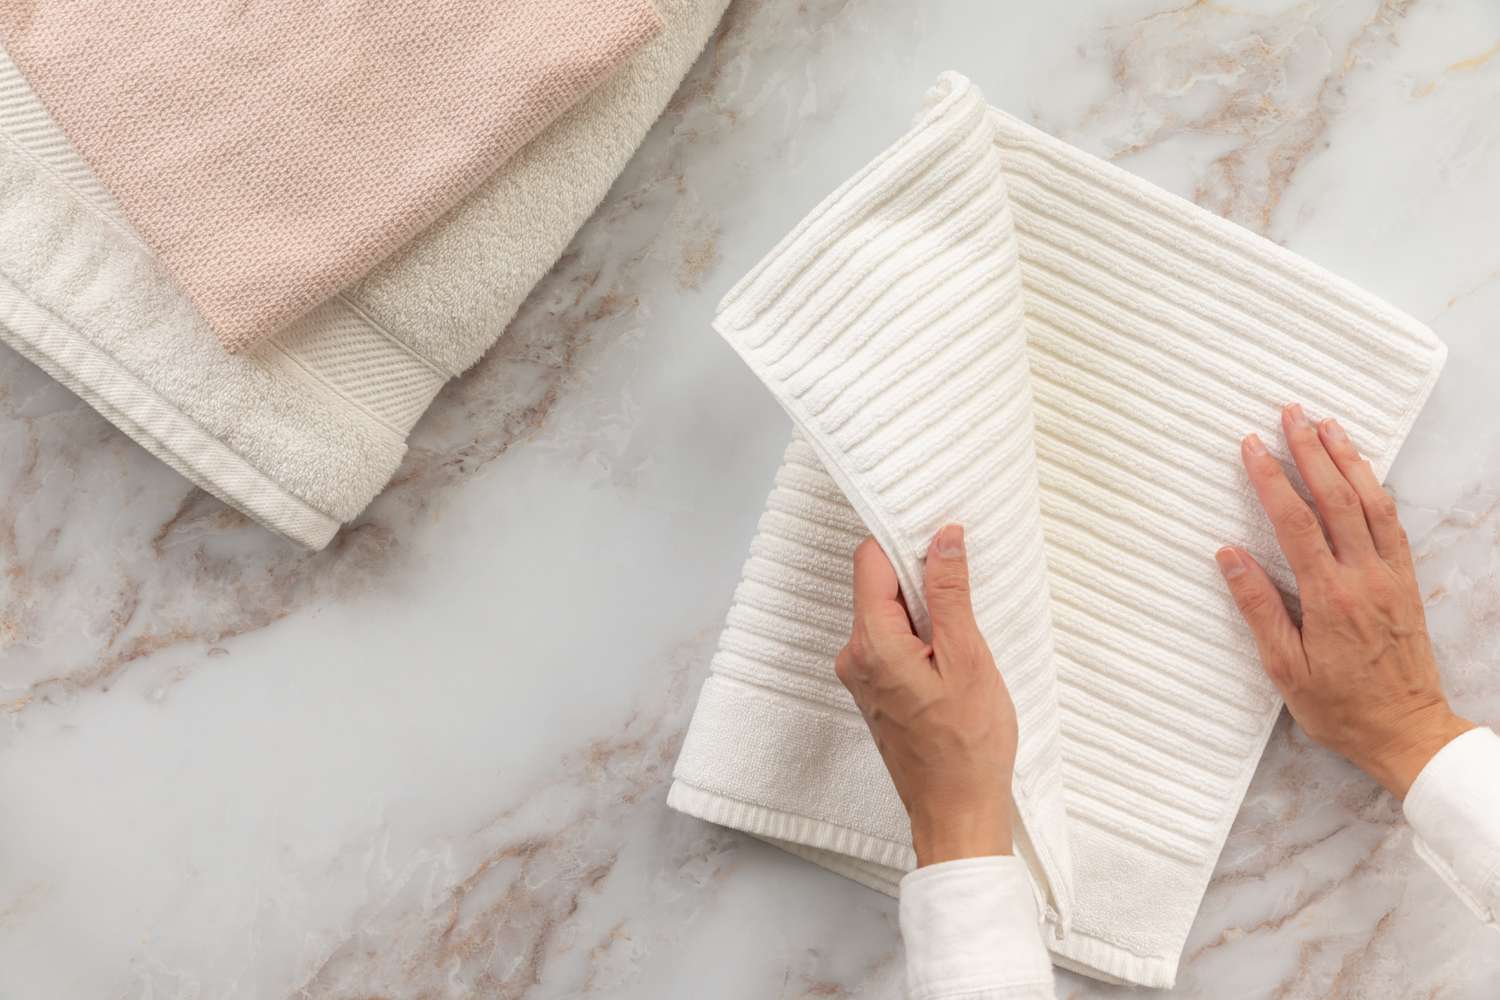 Serviette de bain blanche nervurée pliée en deux deux fois à côté d'autres serviettes de bain